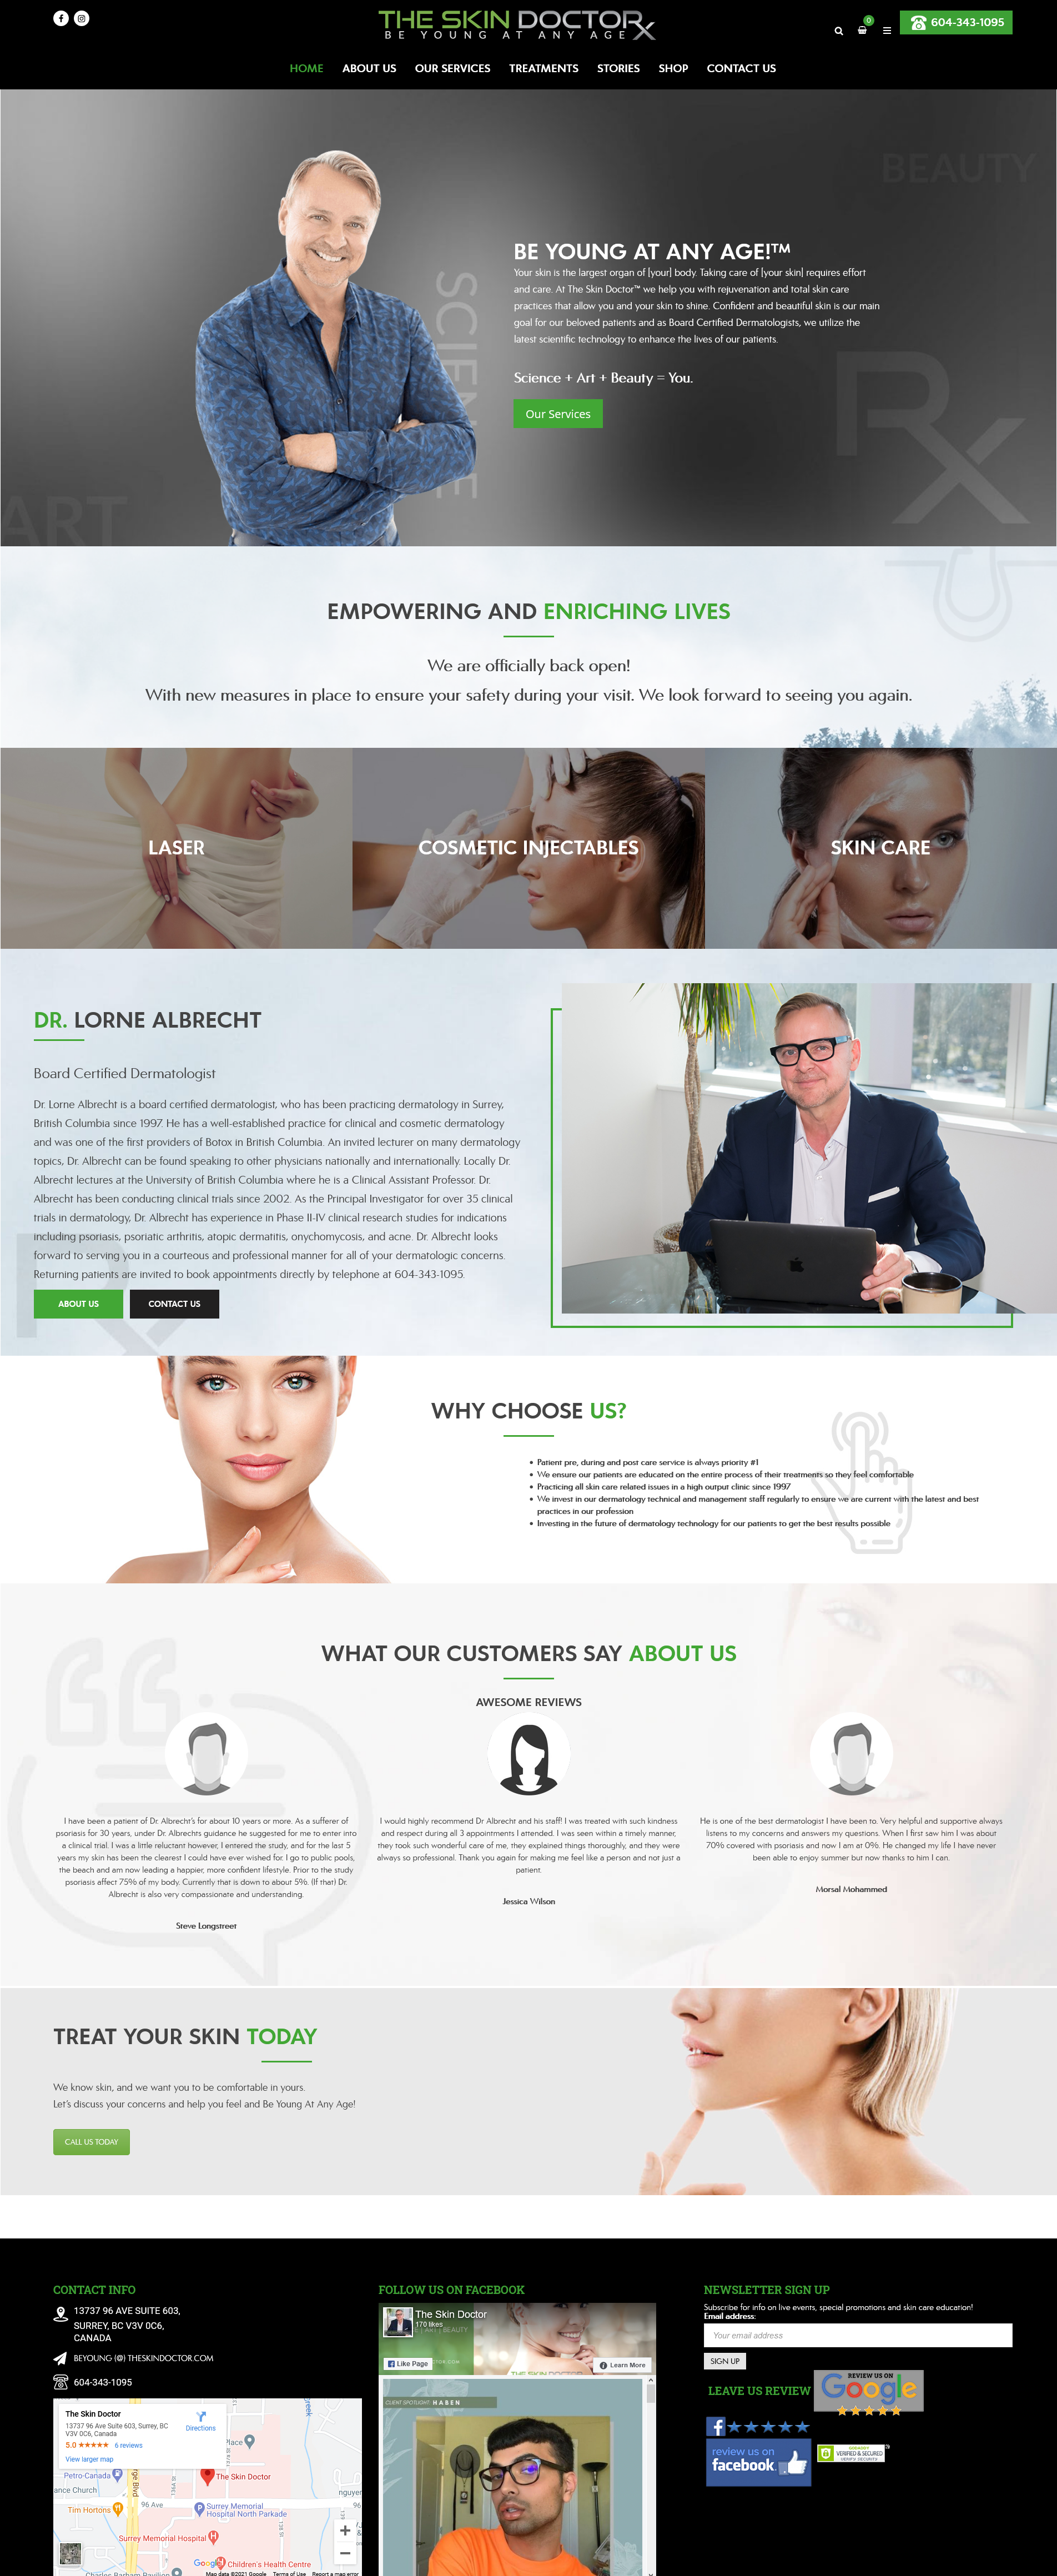 the skin doctor website design